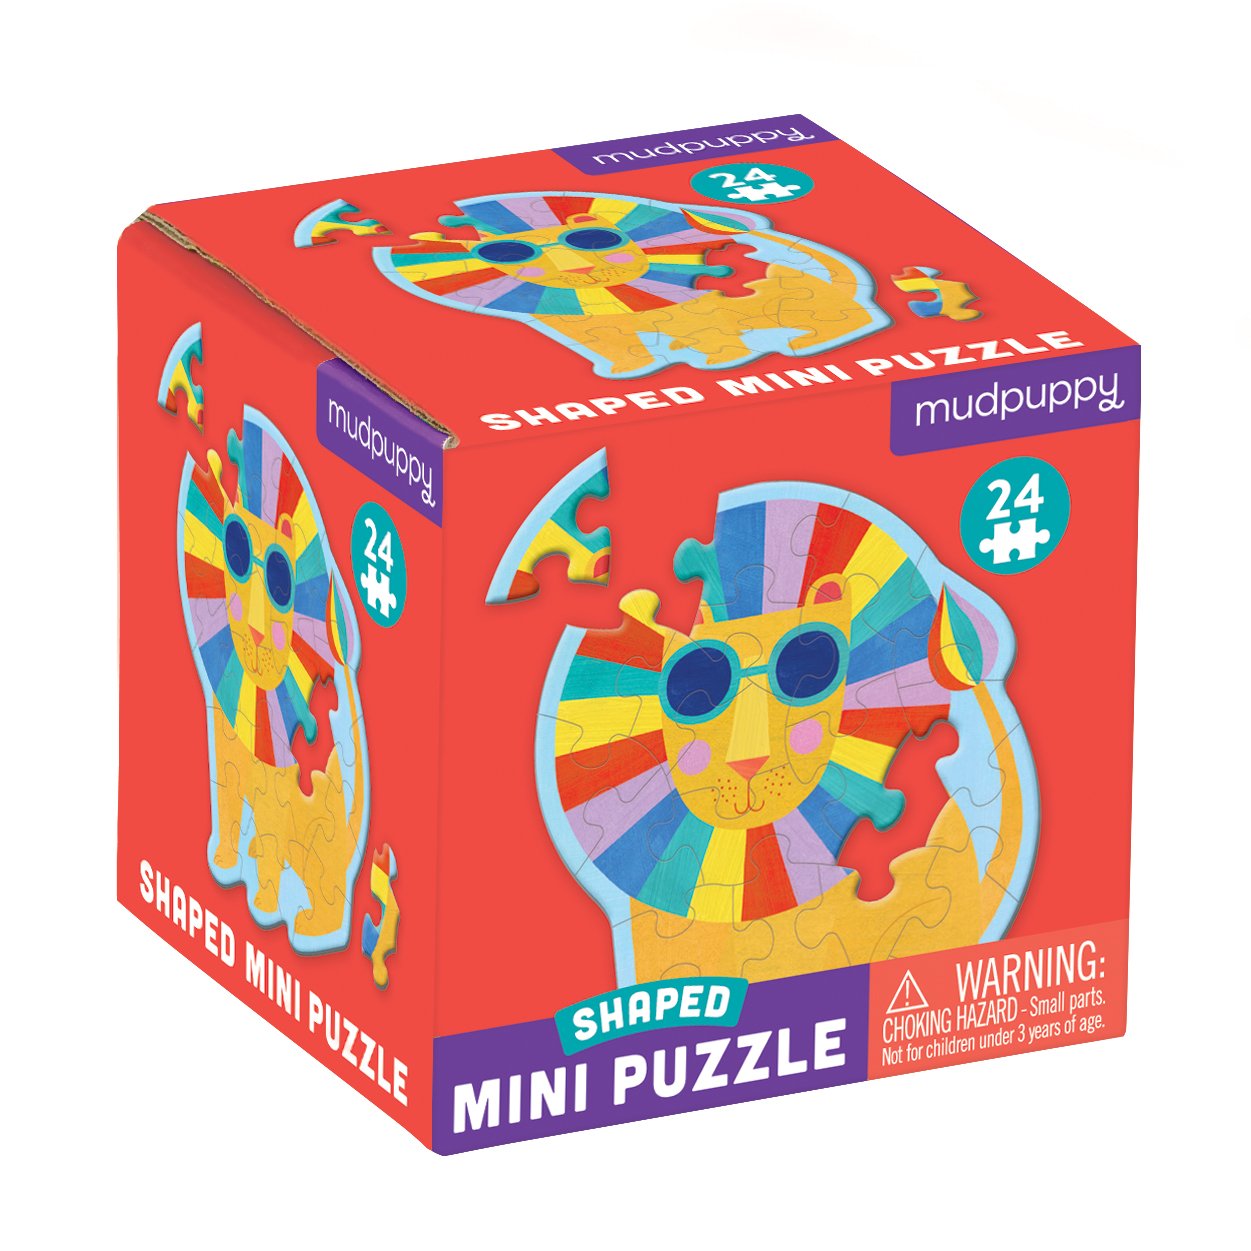 Paris Mini Puzzle - Mudpuppy